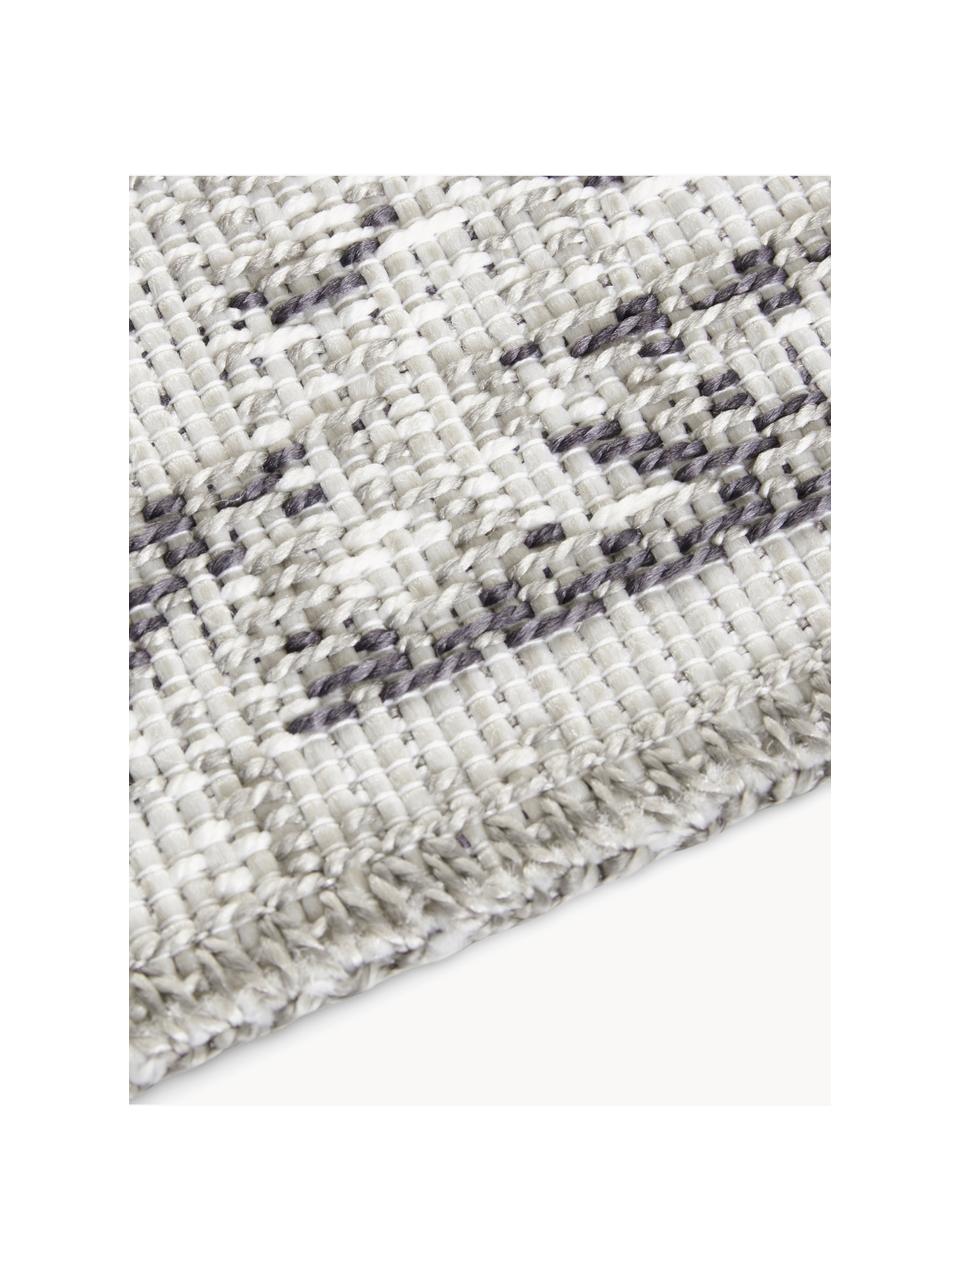 Interiérový/exteriérový koberec Cenon, 100 % polypropylen, Odstíny šedé, Š 190 cm, D 290 cm (velikost L)